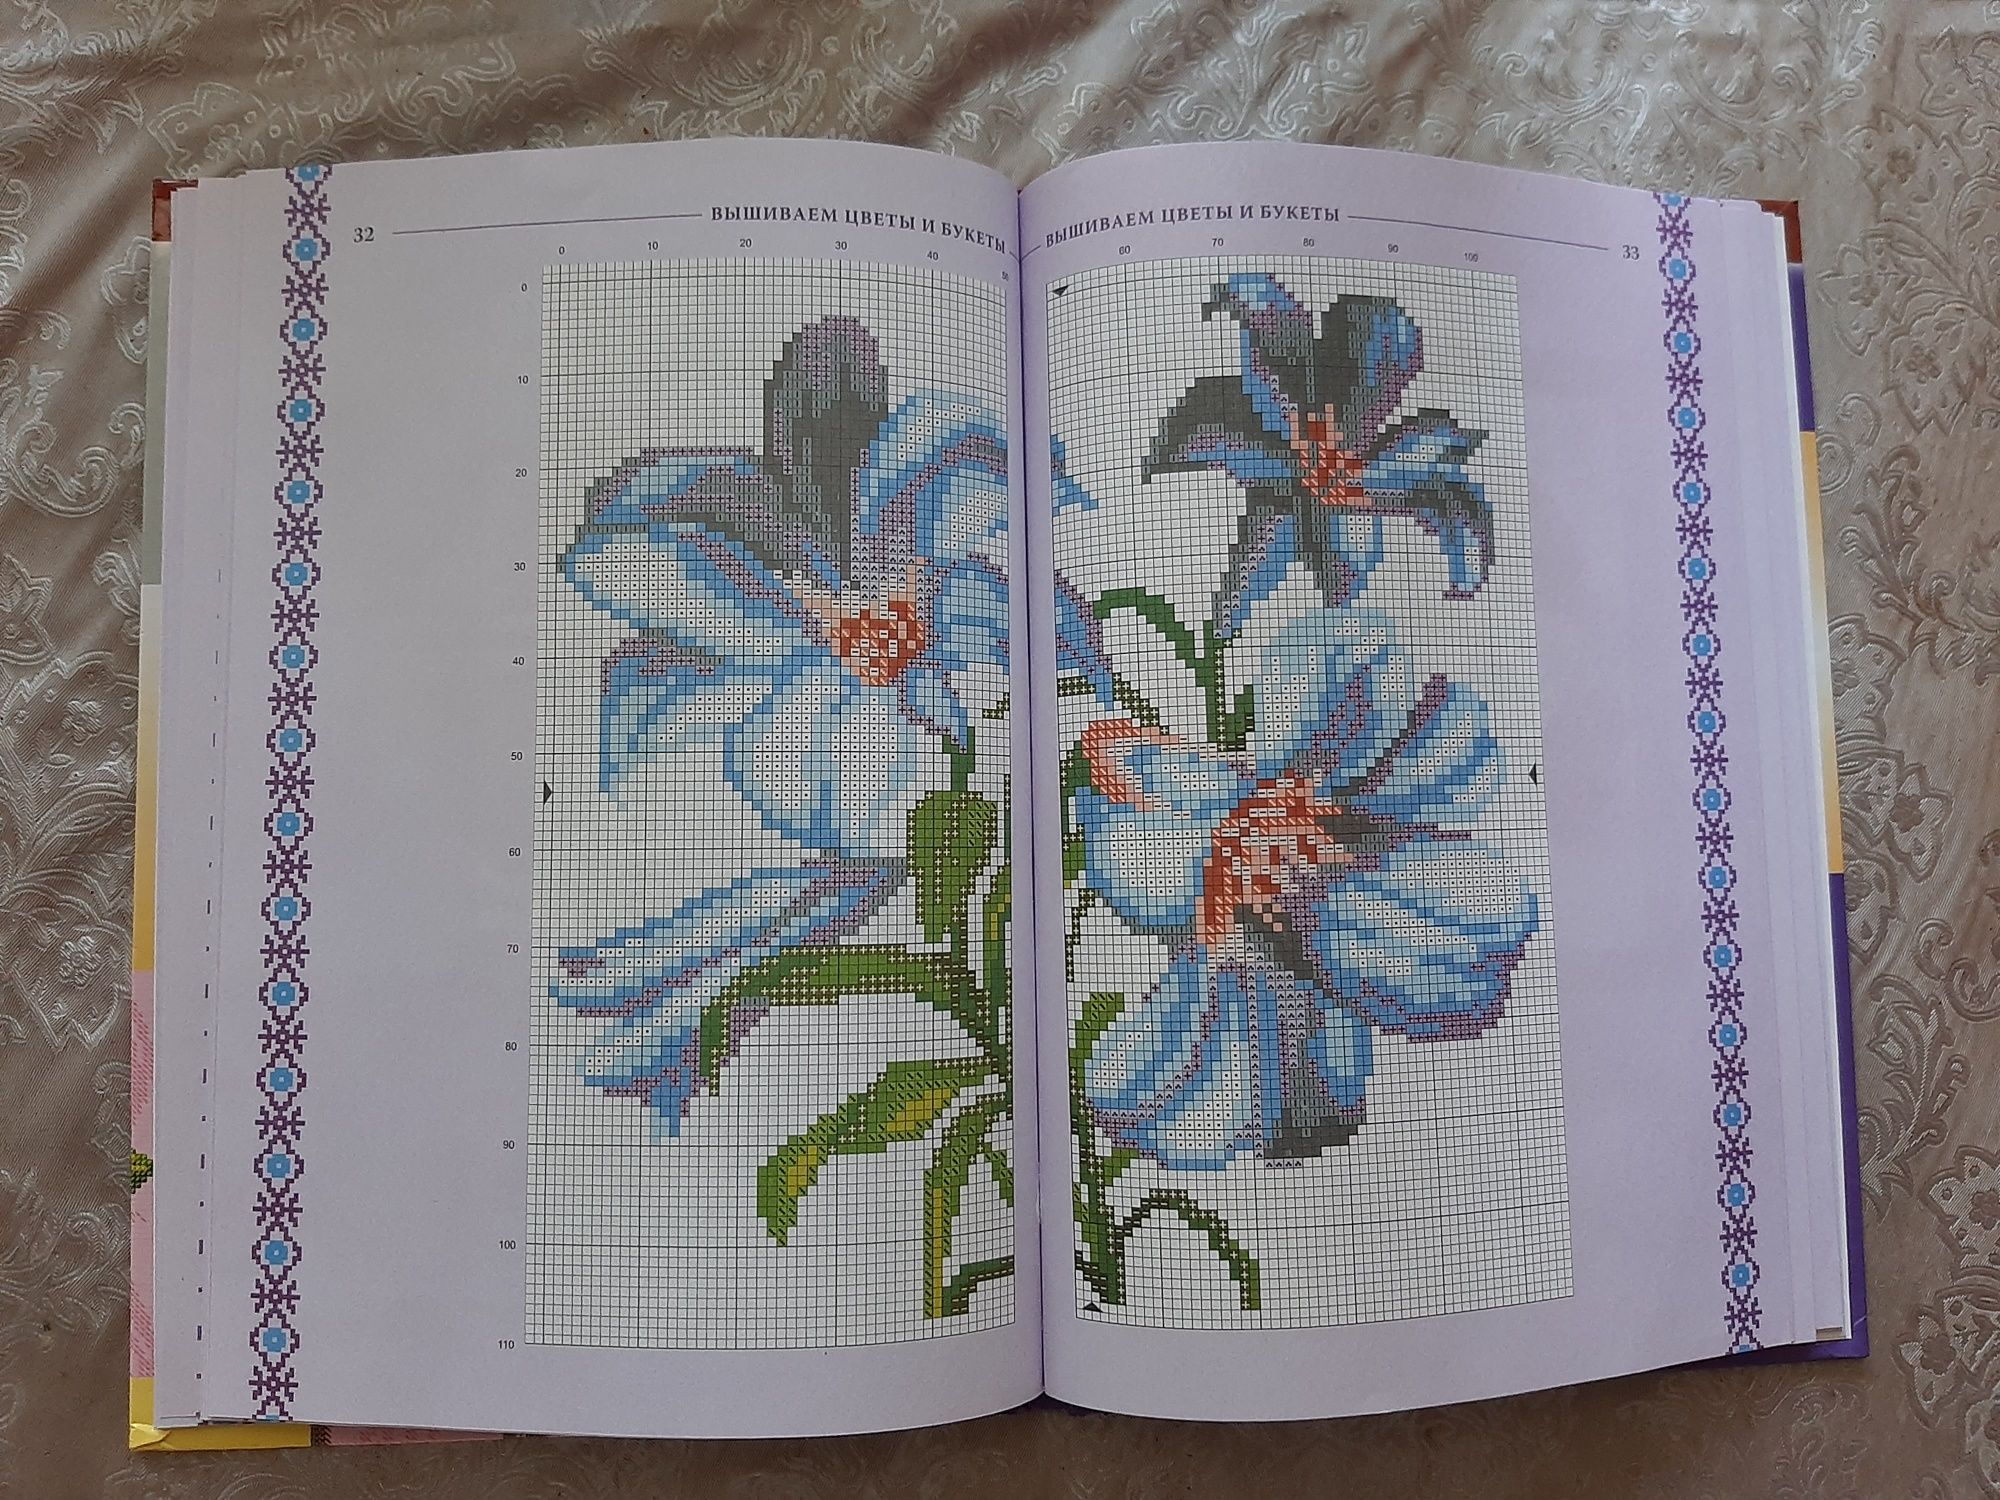 Книга "Вышиваем цветы и букеты"